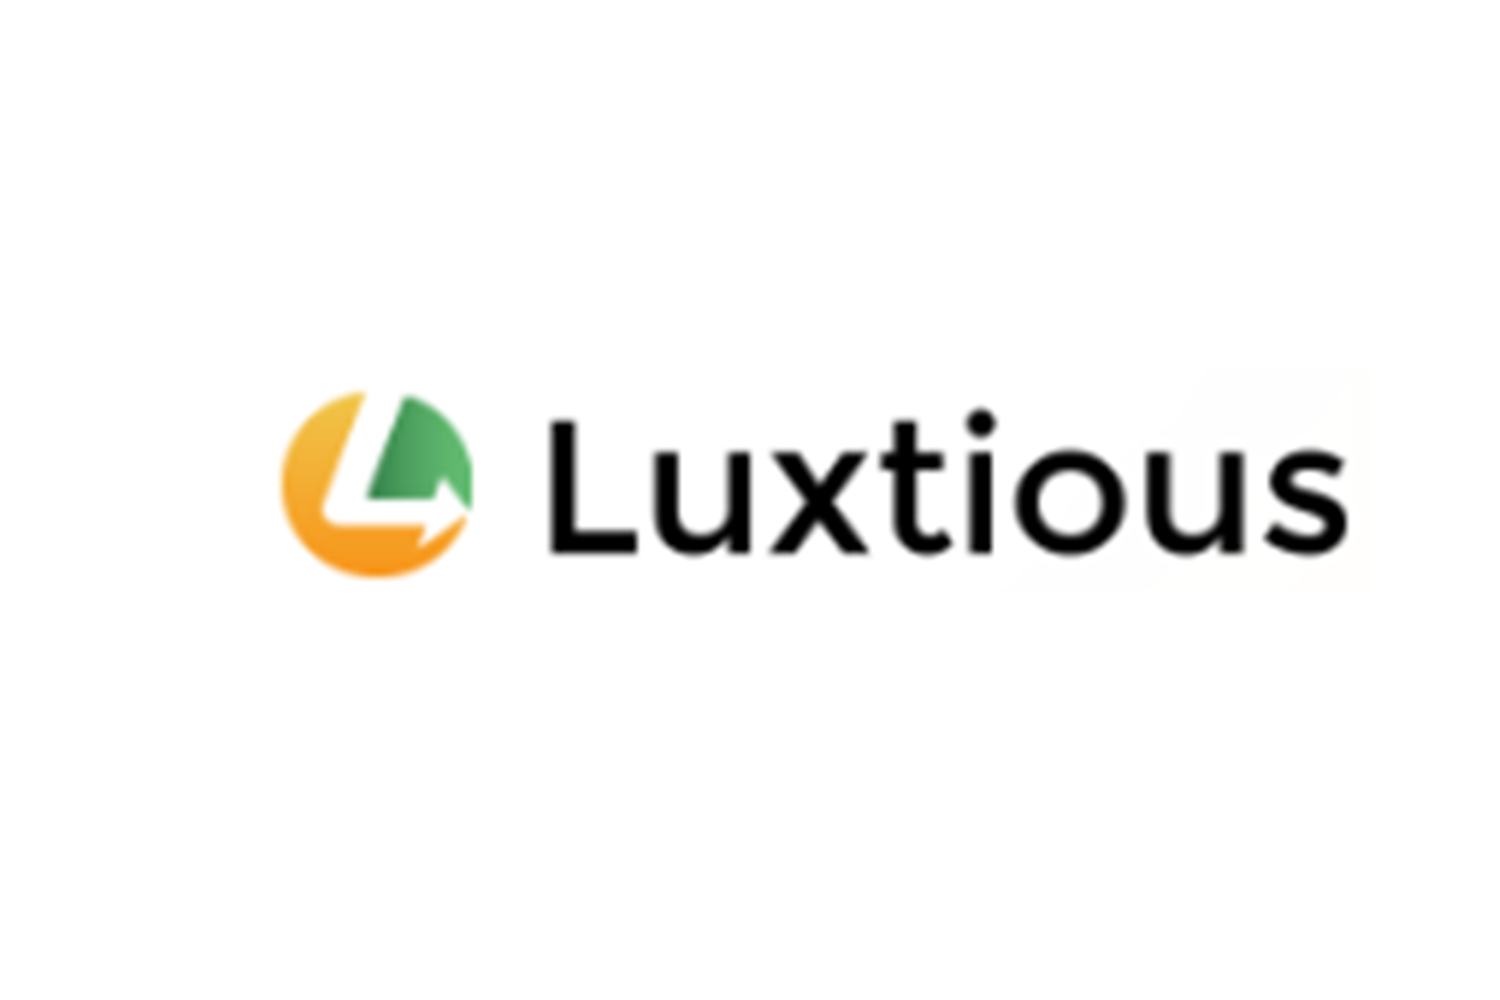 Отзывы клиентов о компании Luxtious и обзор ее предложений